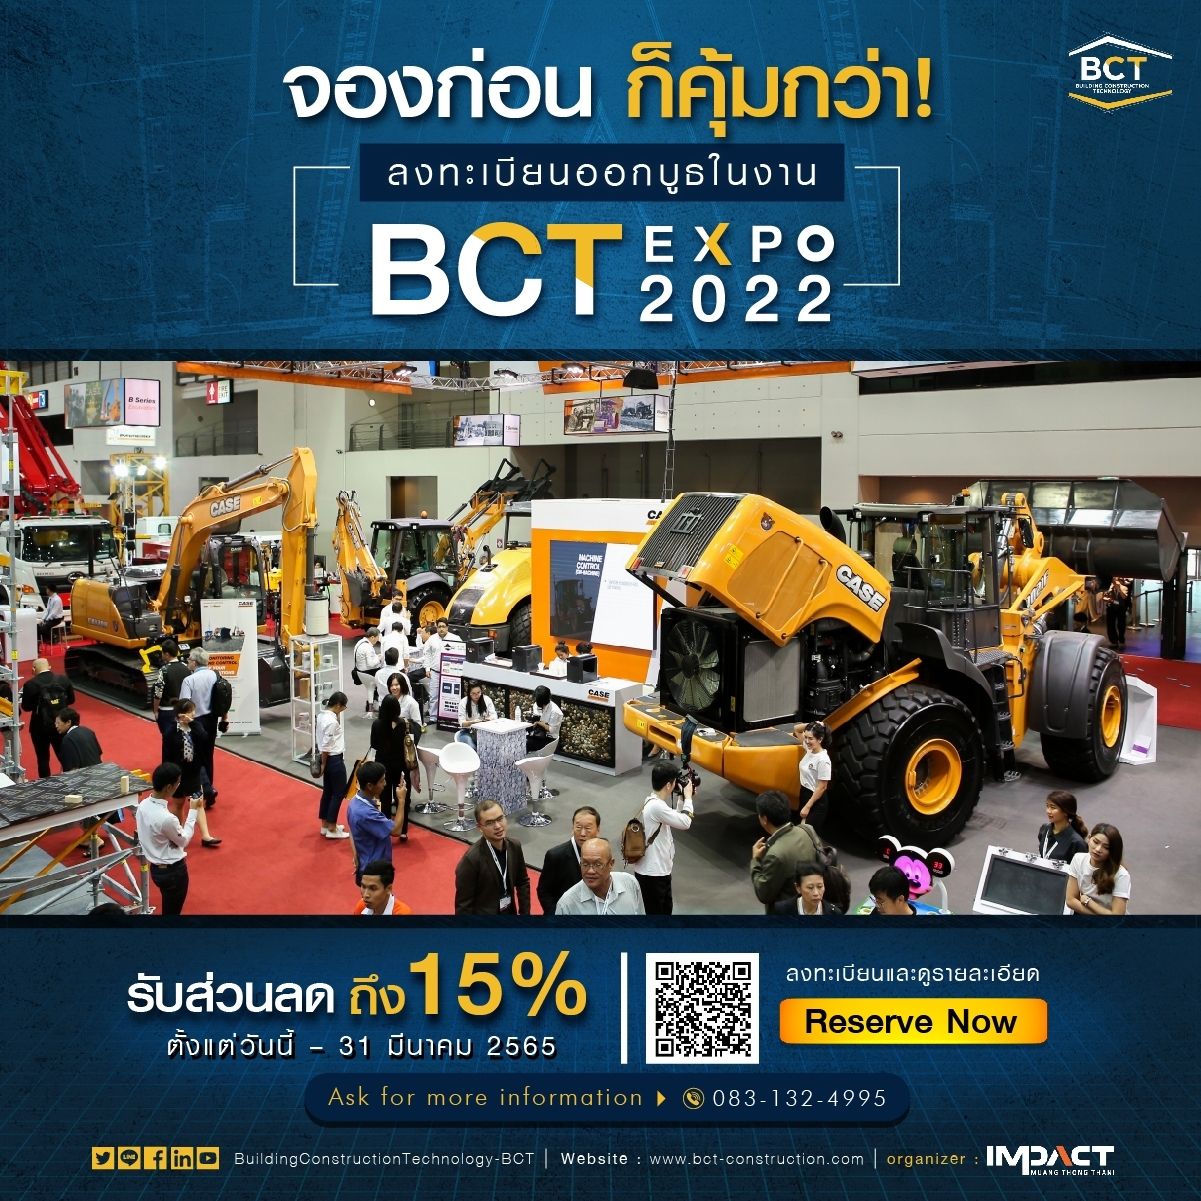 จองก่อน ก็คุ้มกว่า ลงทะเบียนออกบูธในงาน BCT Expo 2022 วันนี้ รับส่วนลดถึง 15%!